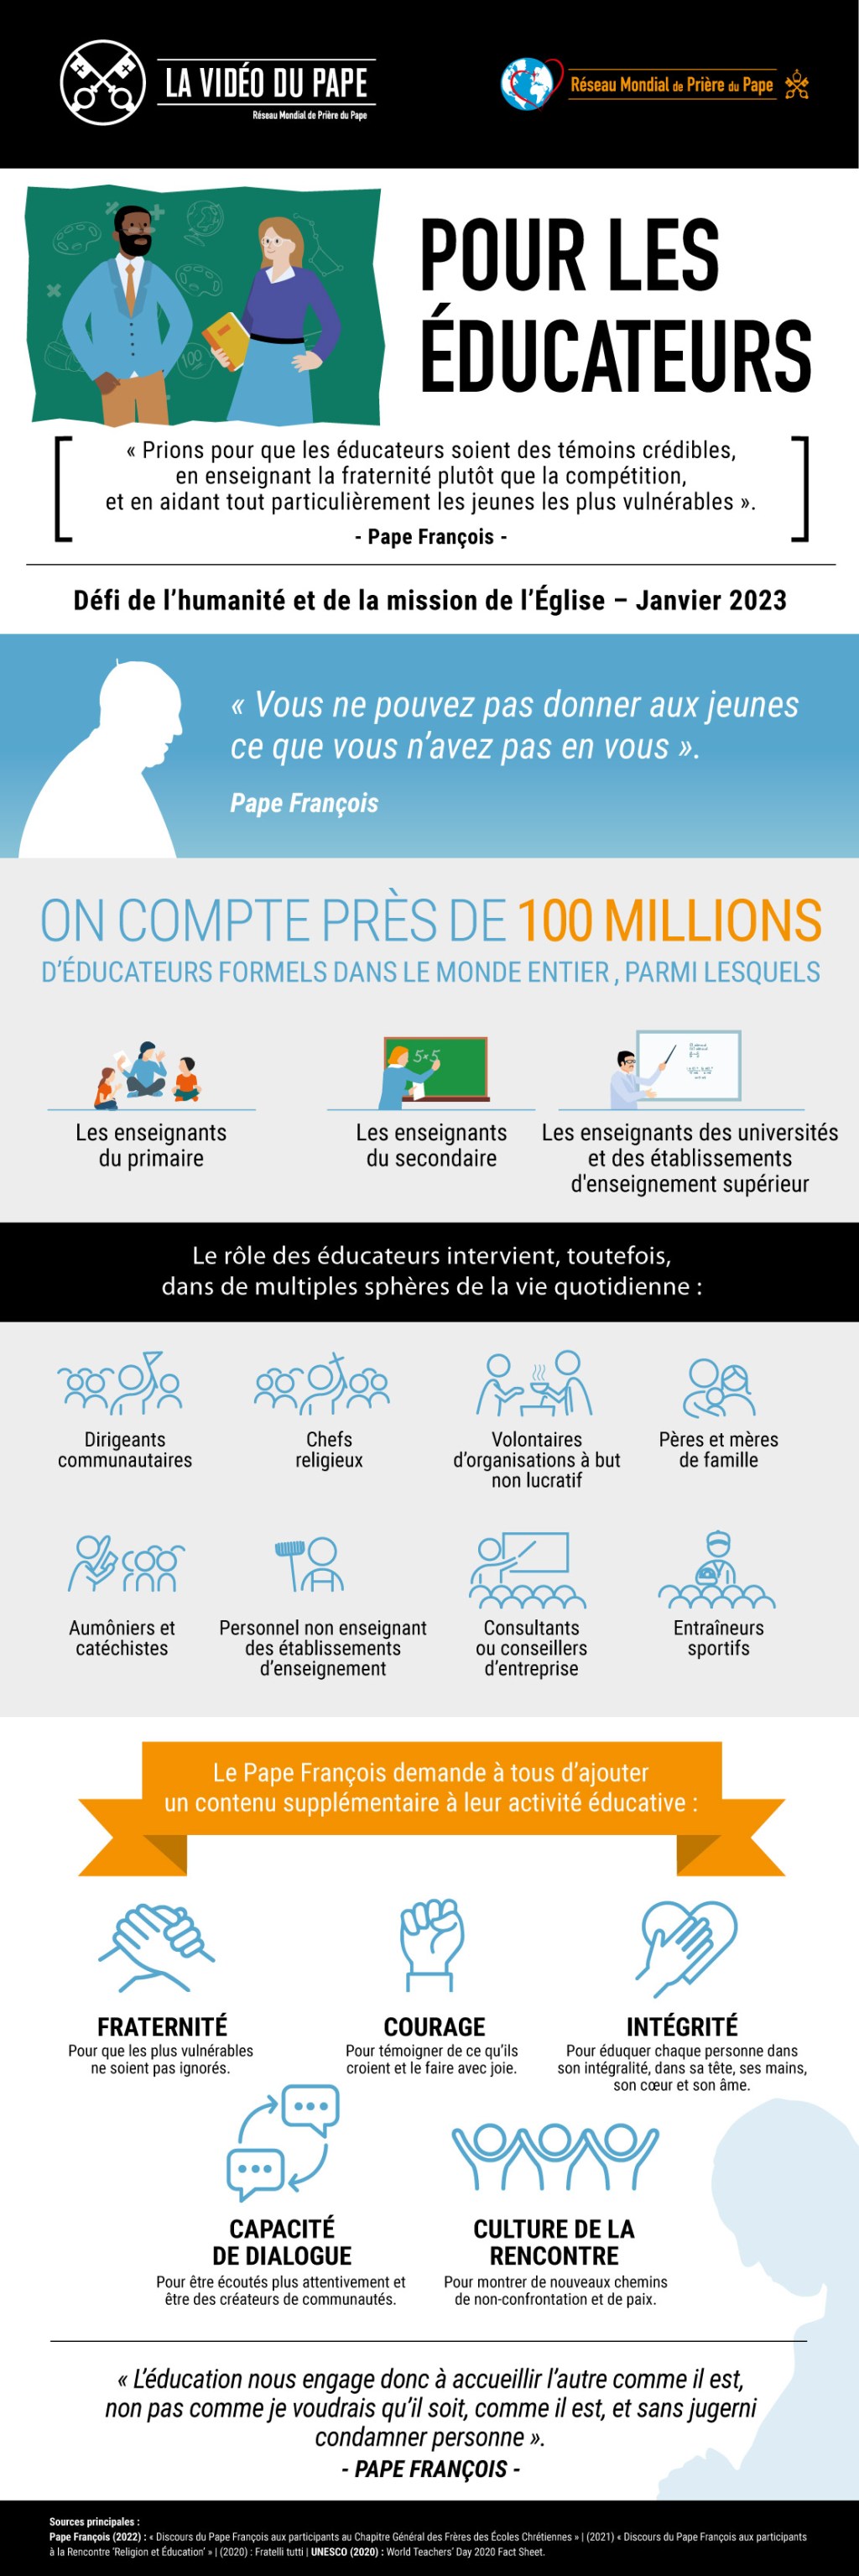 Infographie-TPV-1-2023-FR-Pour-les-educateurs